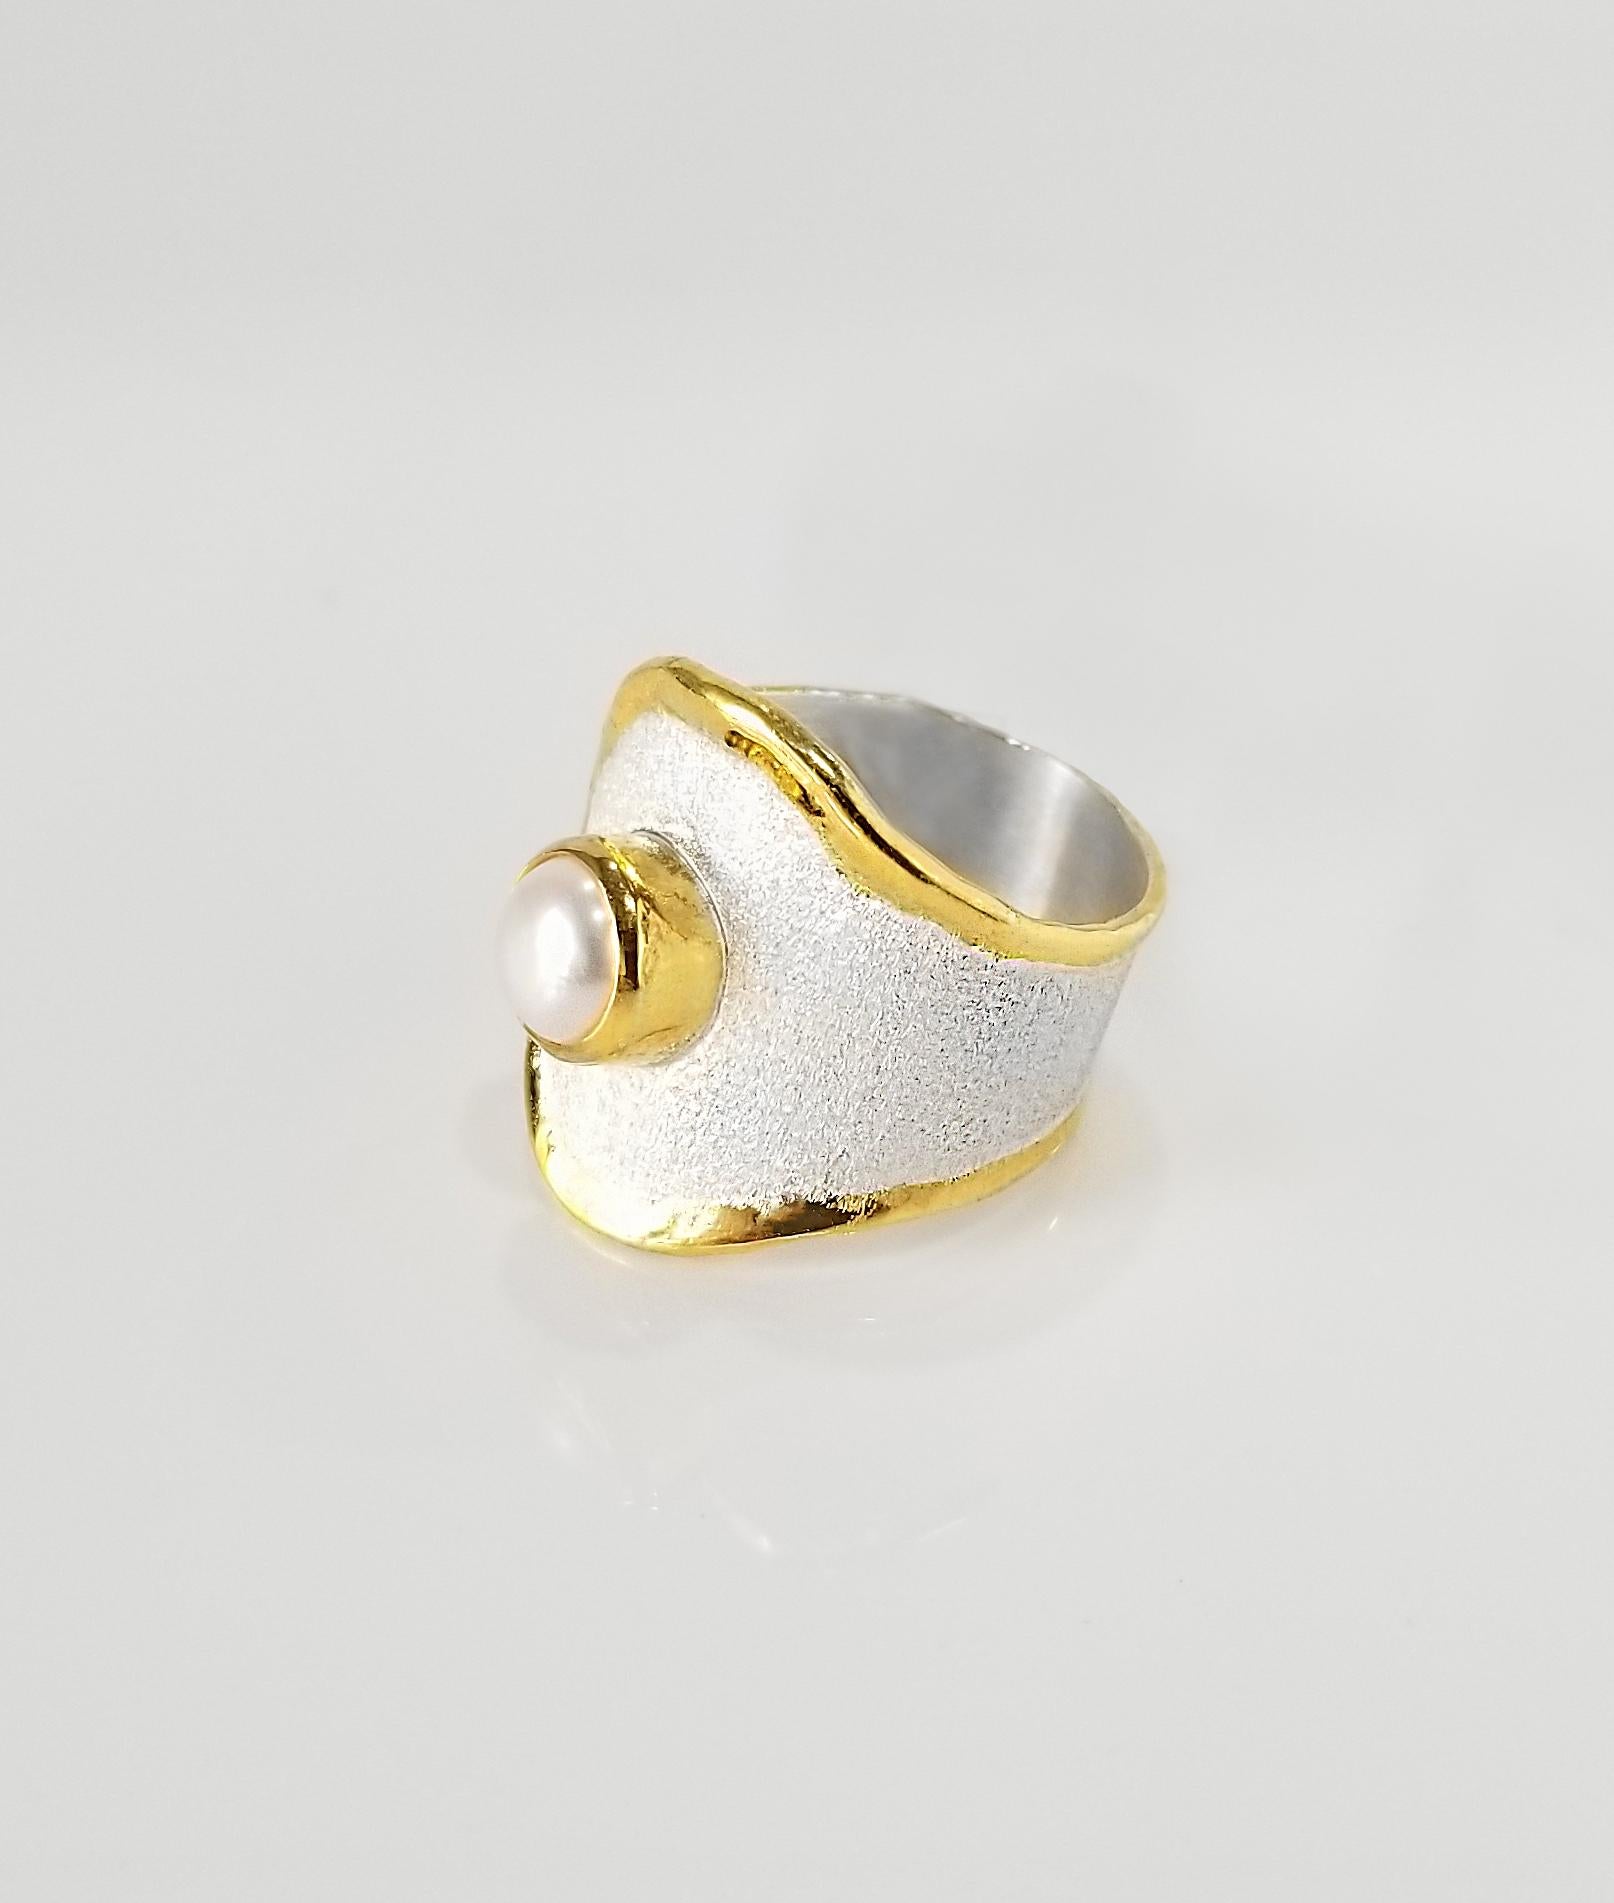 Yianni Creations Midas Collection 100% handgefertigter Artisan Ring aus Feinsilber mit einer Auflage aus 24 Karat Gelbgold verfügt über eine 7,5 mm große Perle, die durch einzigartige Handwerkstechniken ergänzt wird - gebürstete Textur und von der